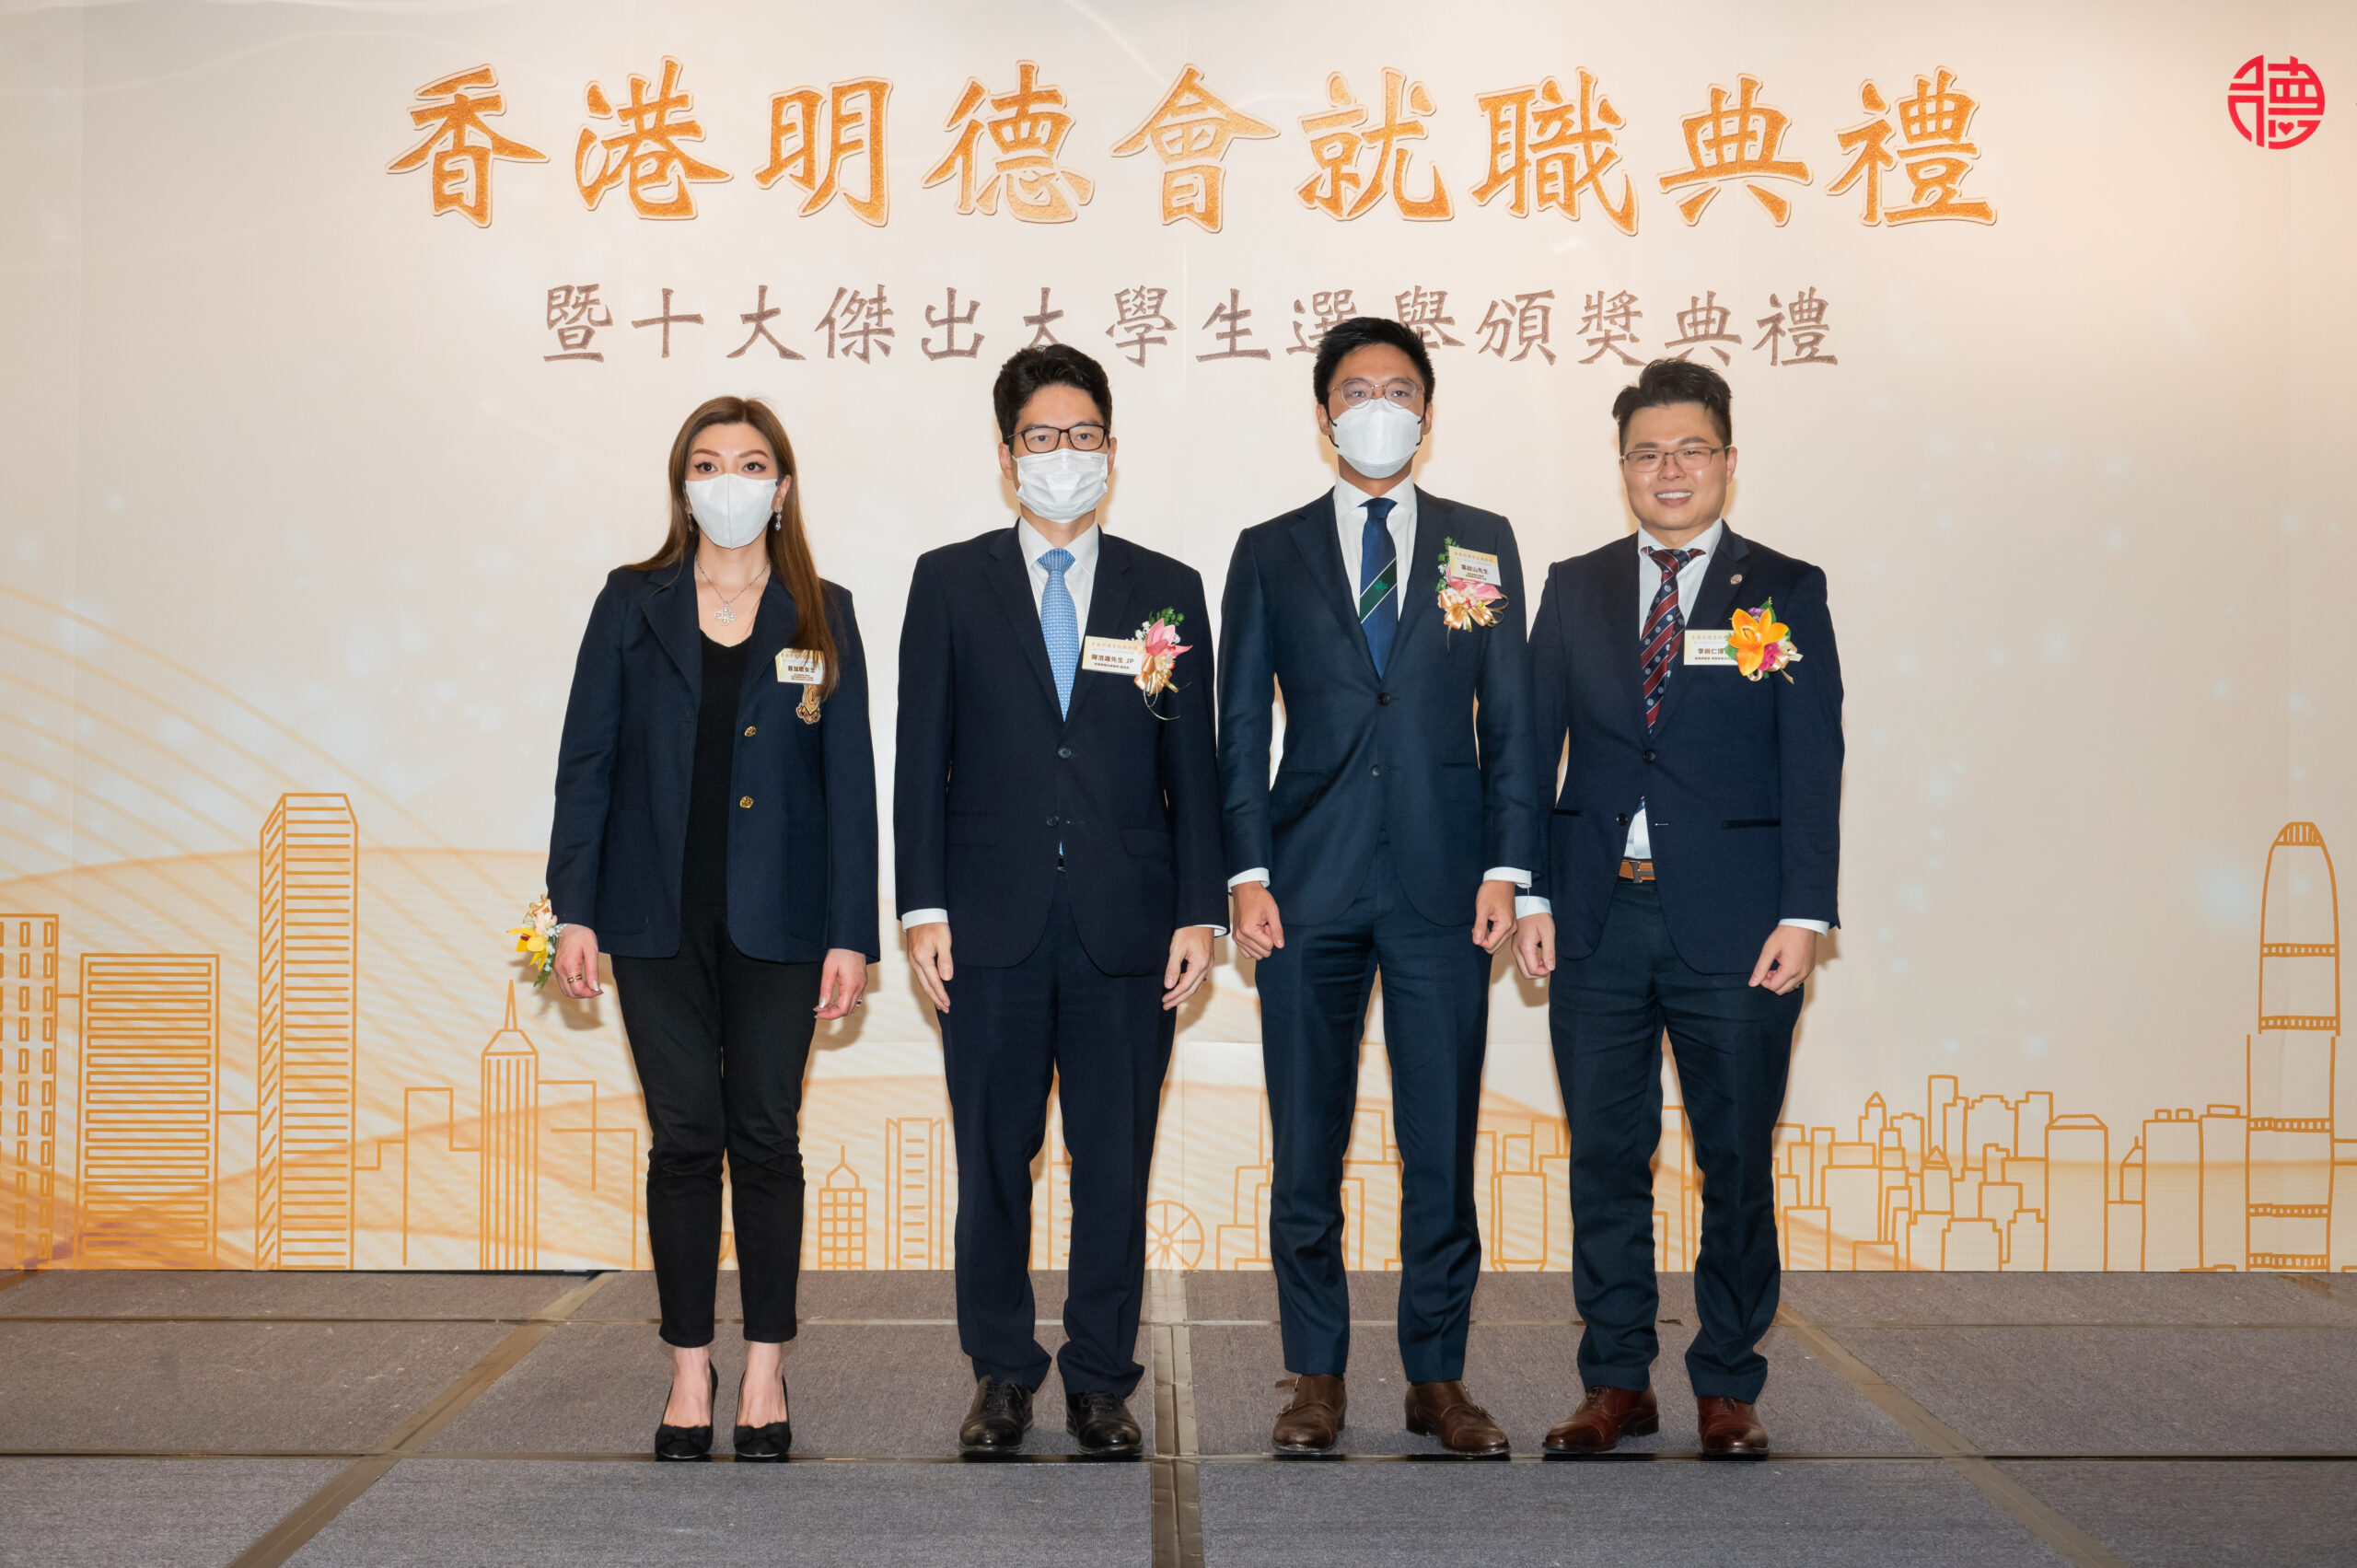 頒獎嘉賓 左至右: 蔡加敏, 陳浩濂, 霍啟山, 李尚仁